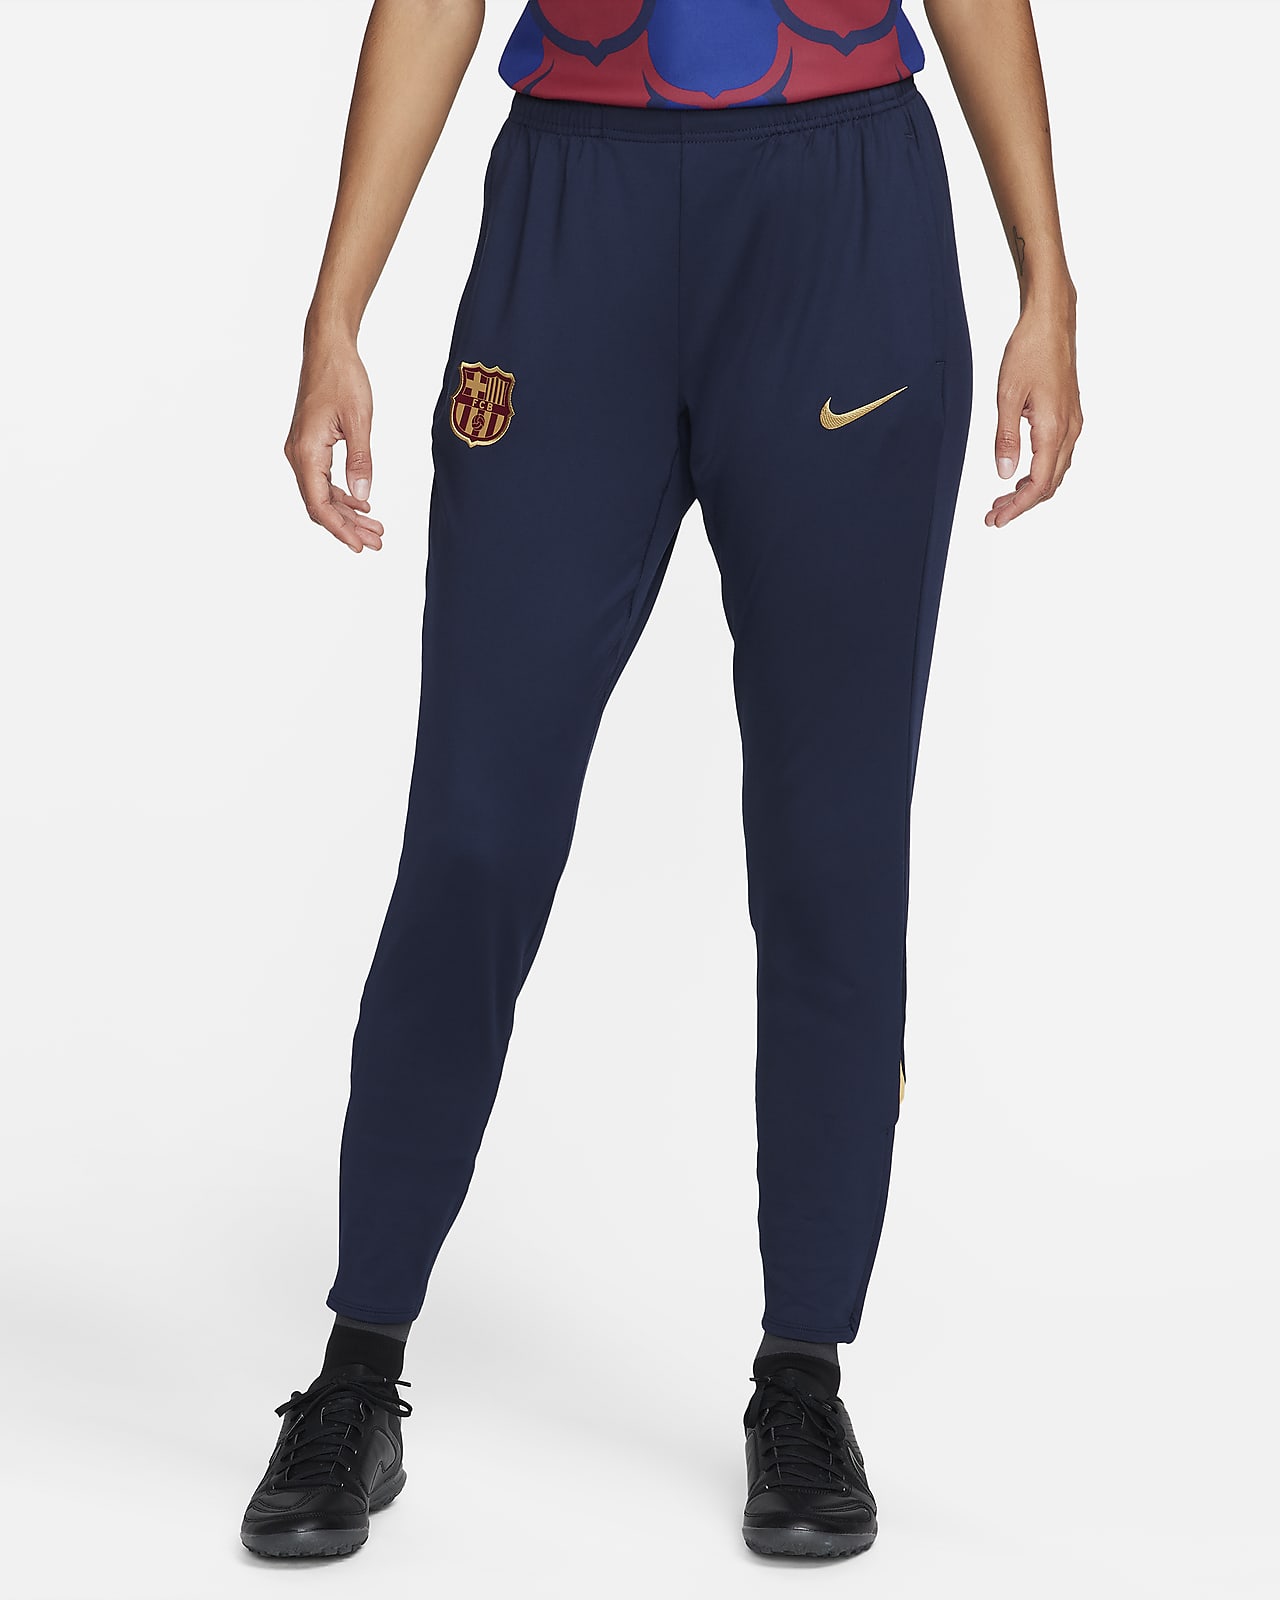 Γυναικείο ποδοσφαιρικό παντελόνι Nike Dri-FIT Μπαρτσελόνα Strike